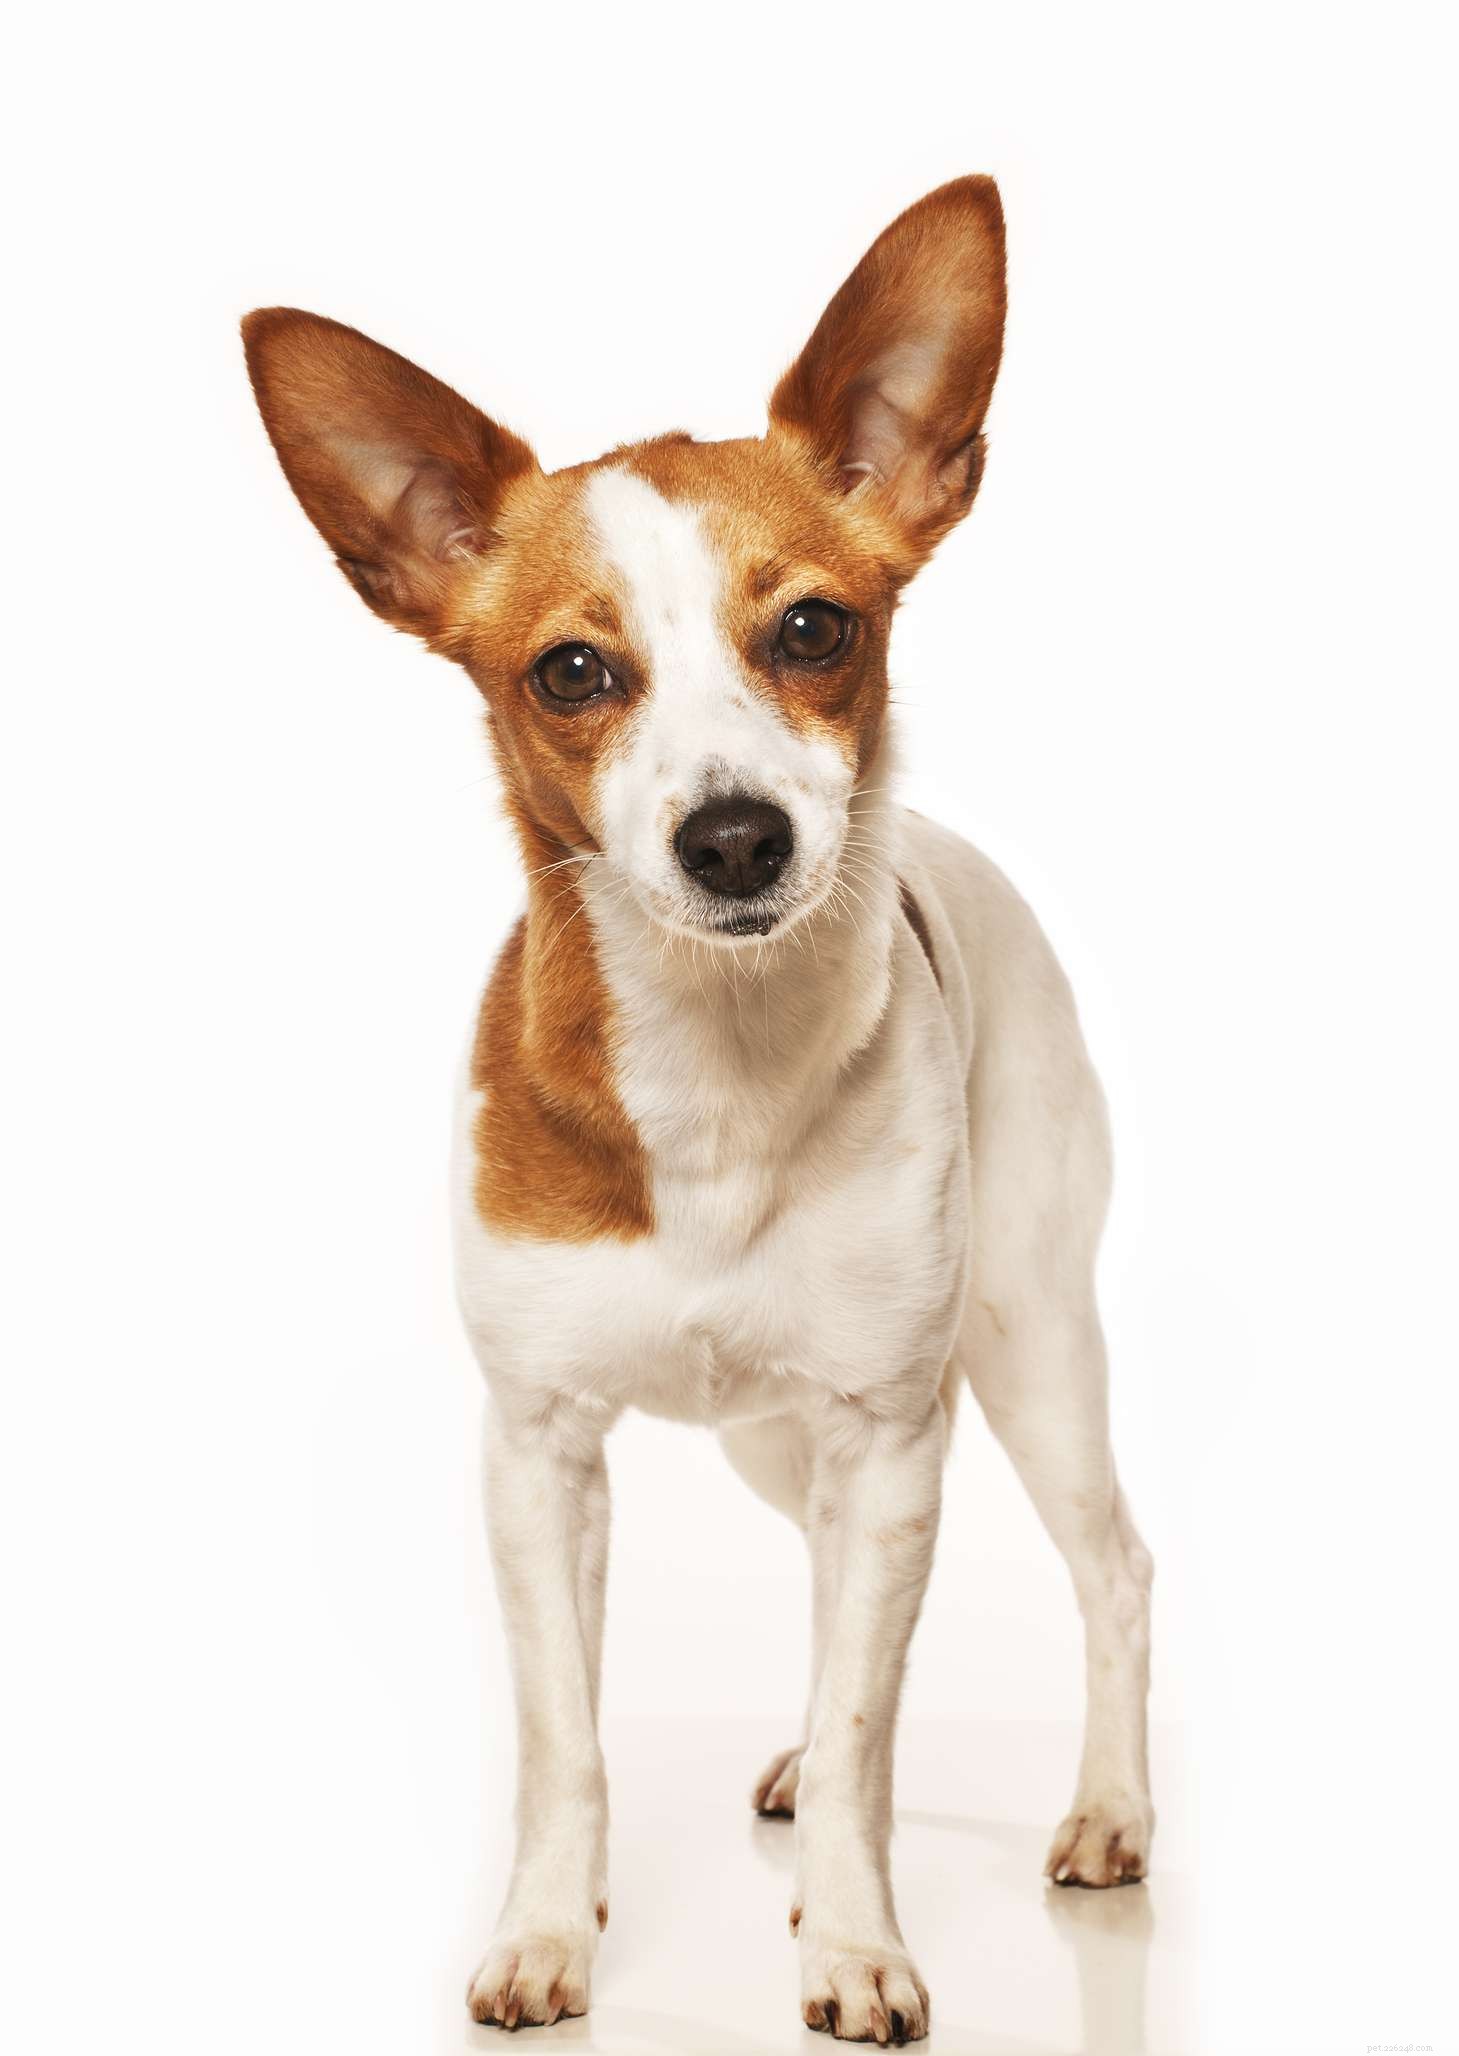 Podengo Pequeno portugais :caractéristiques et soins de la race de chien